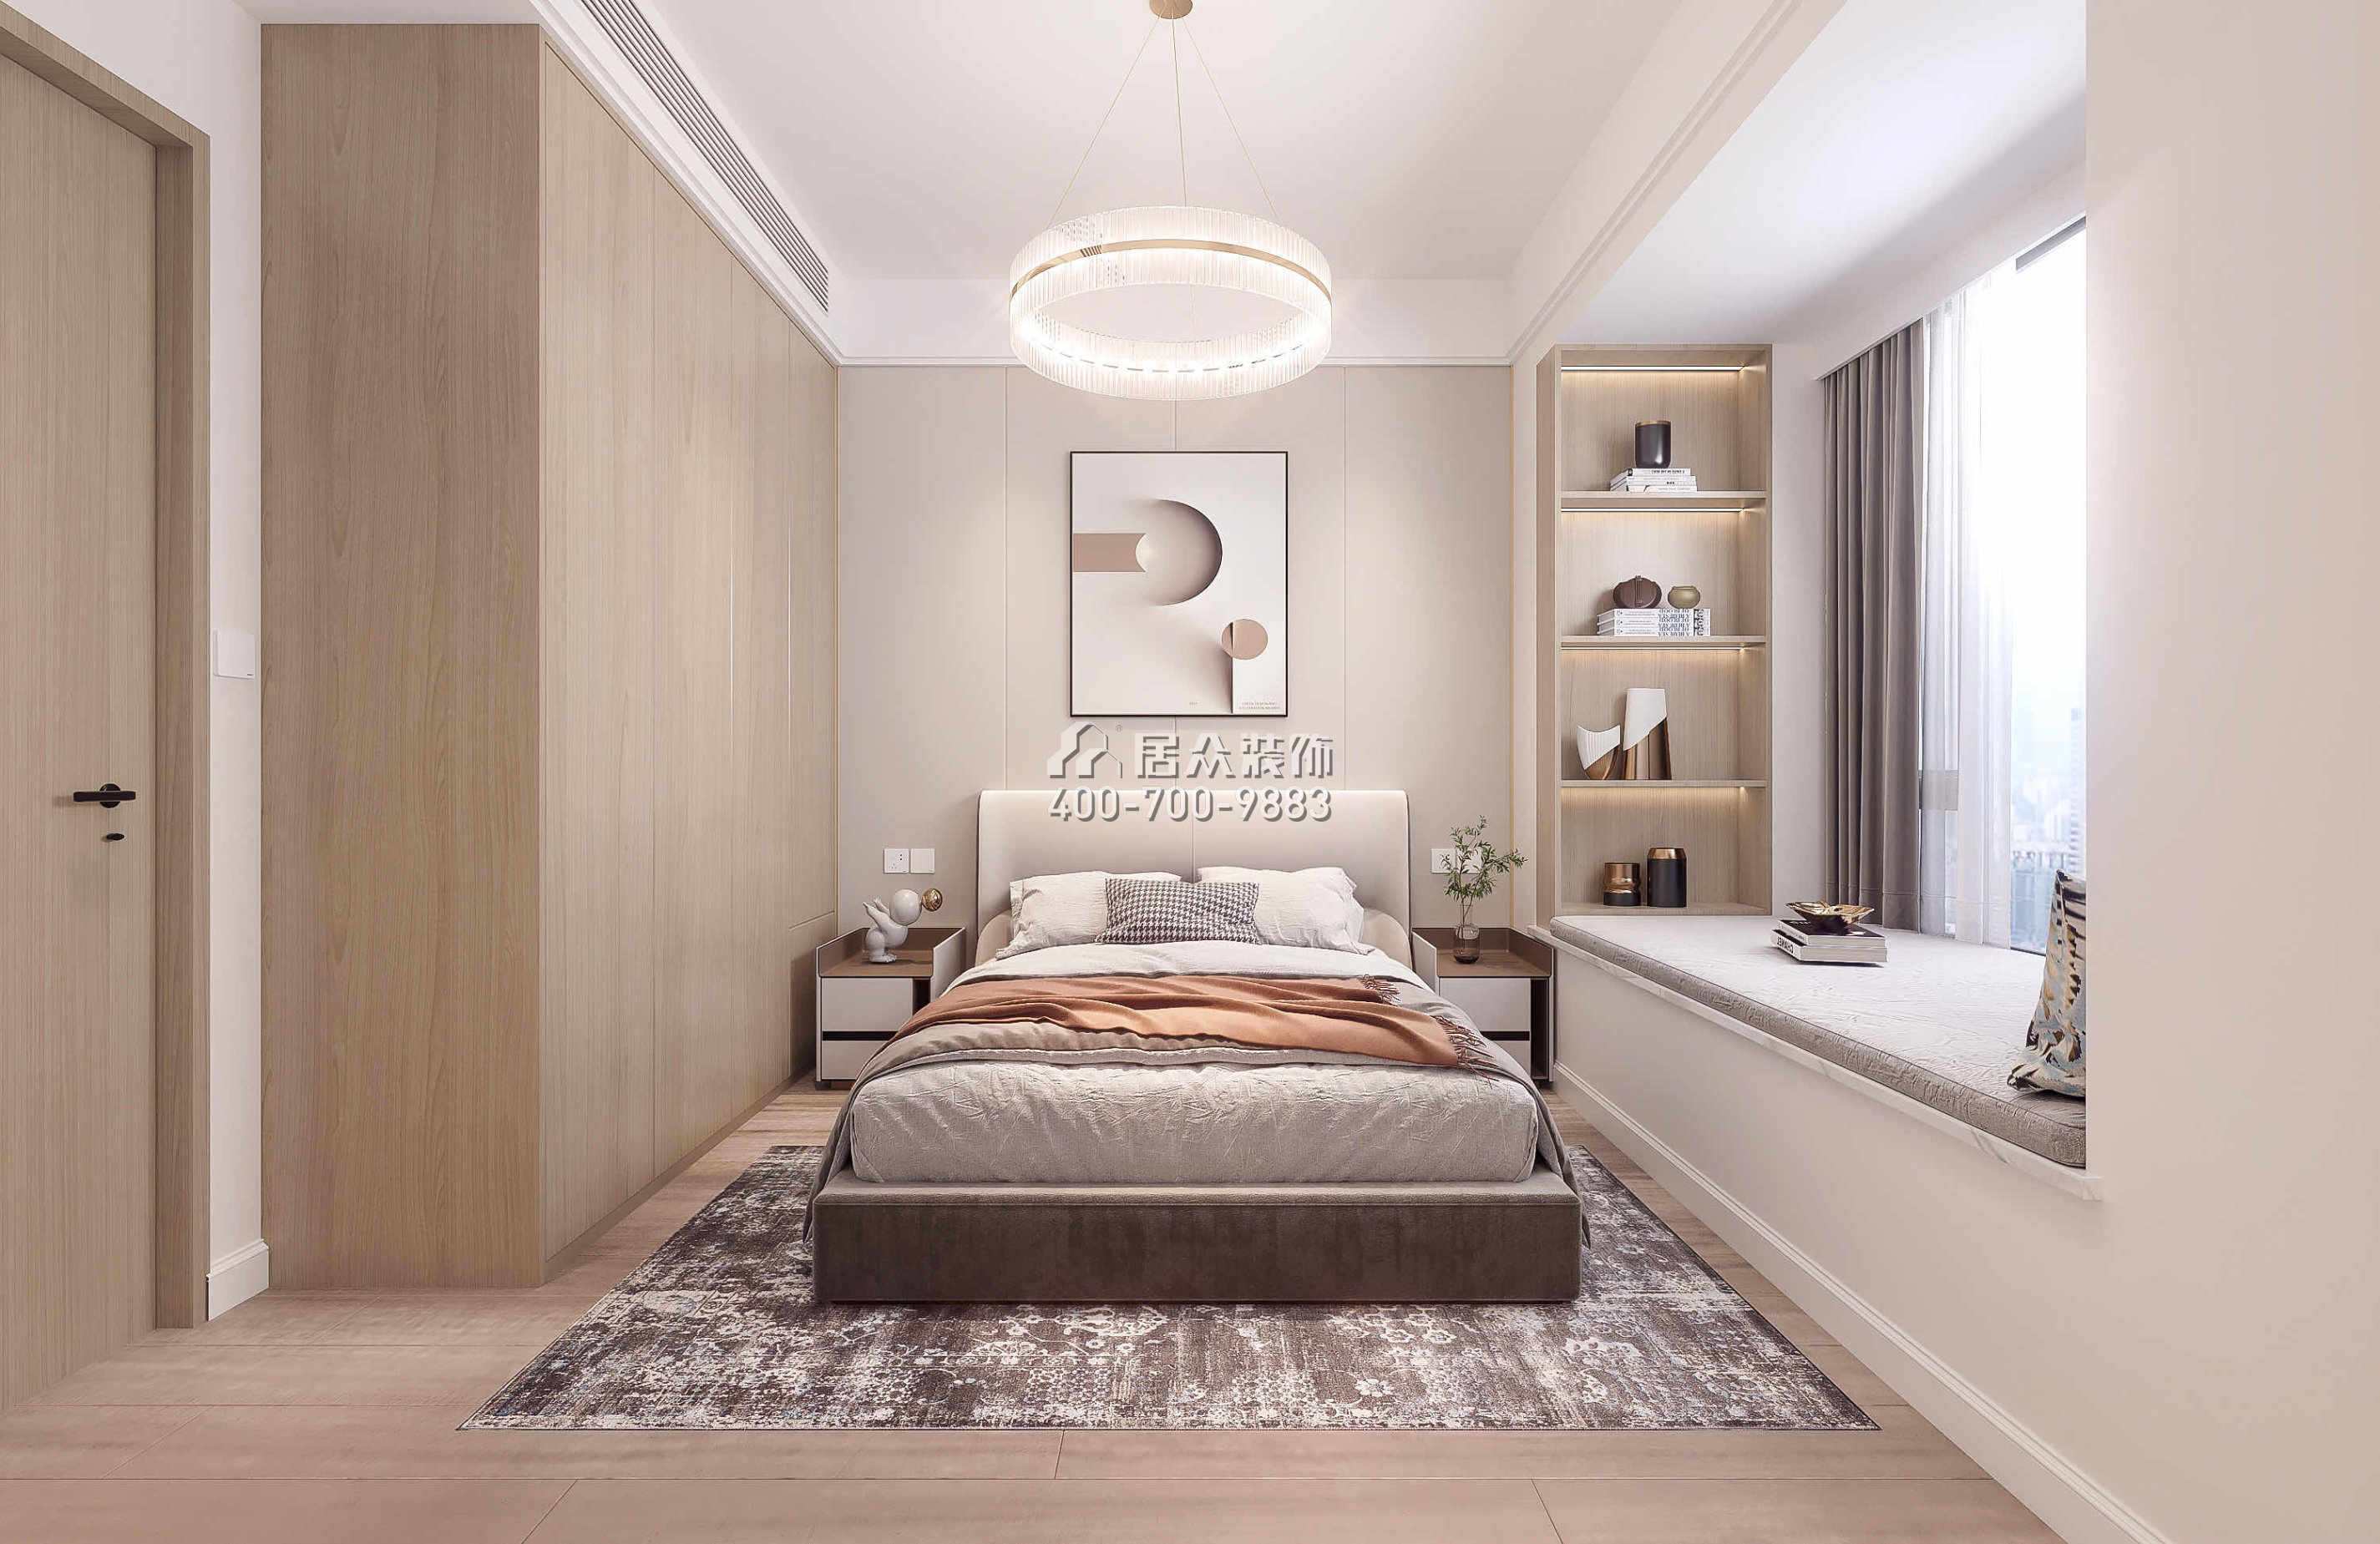 中洲滨海华府79平方米现代简约风格平层户型卧室装修效果图